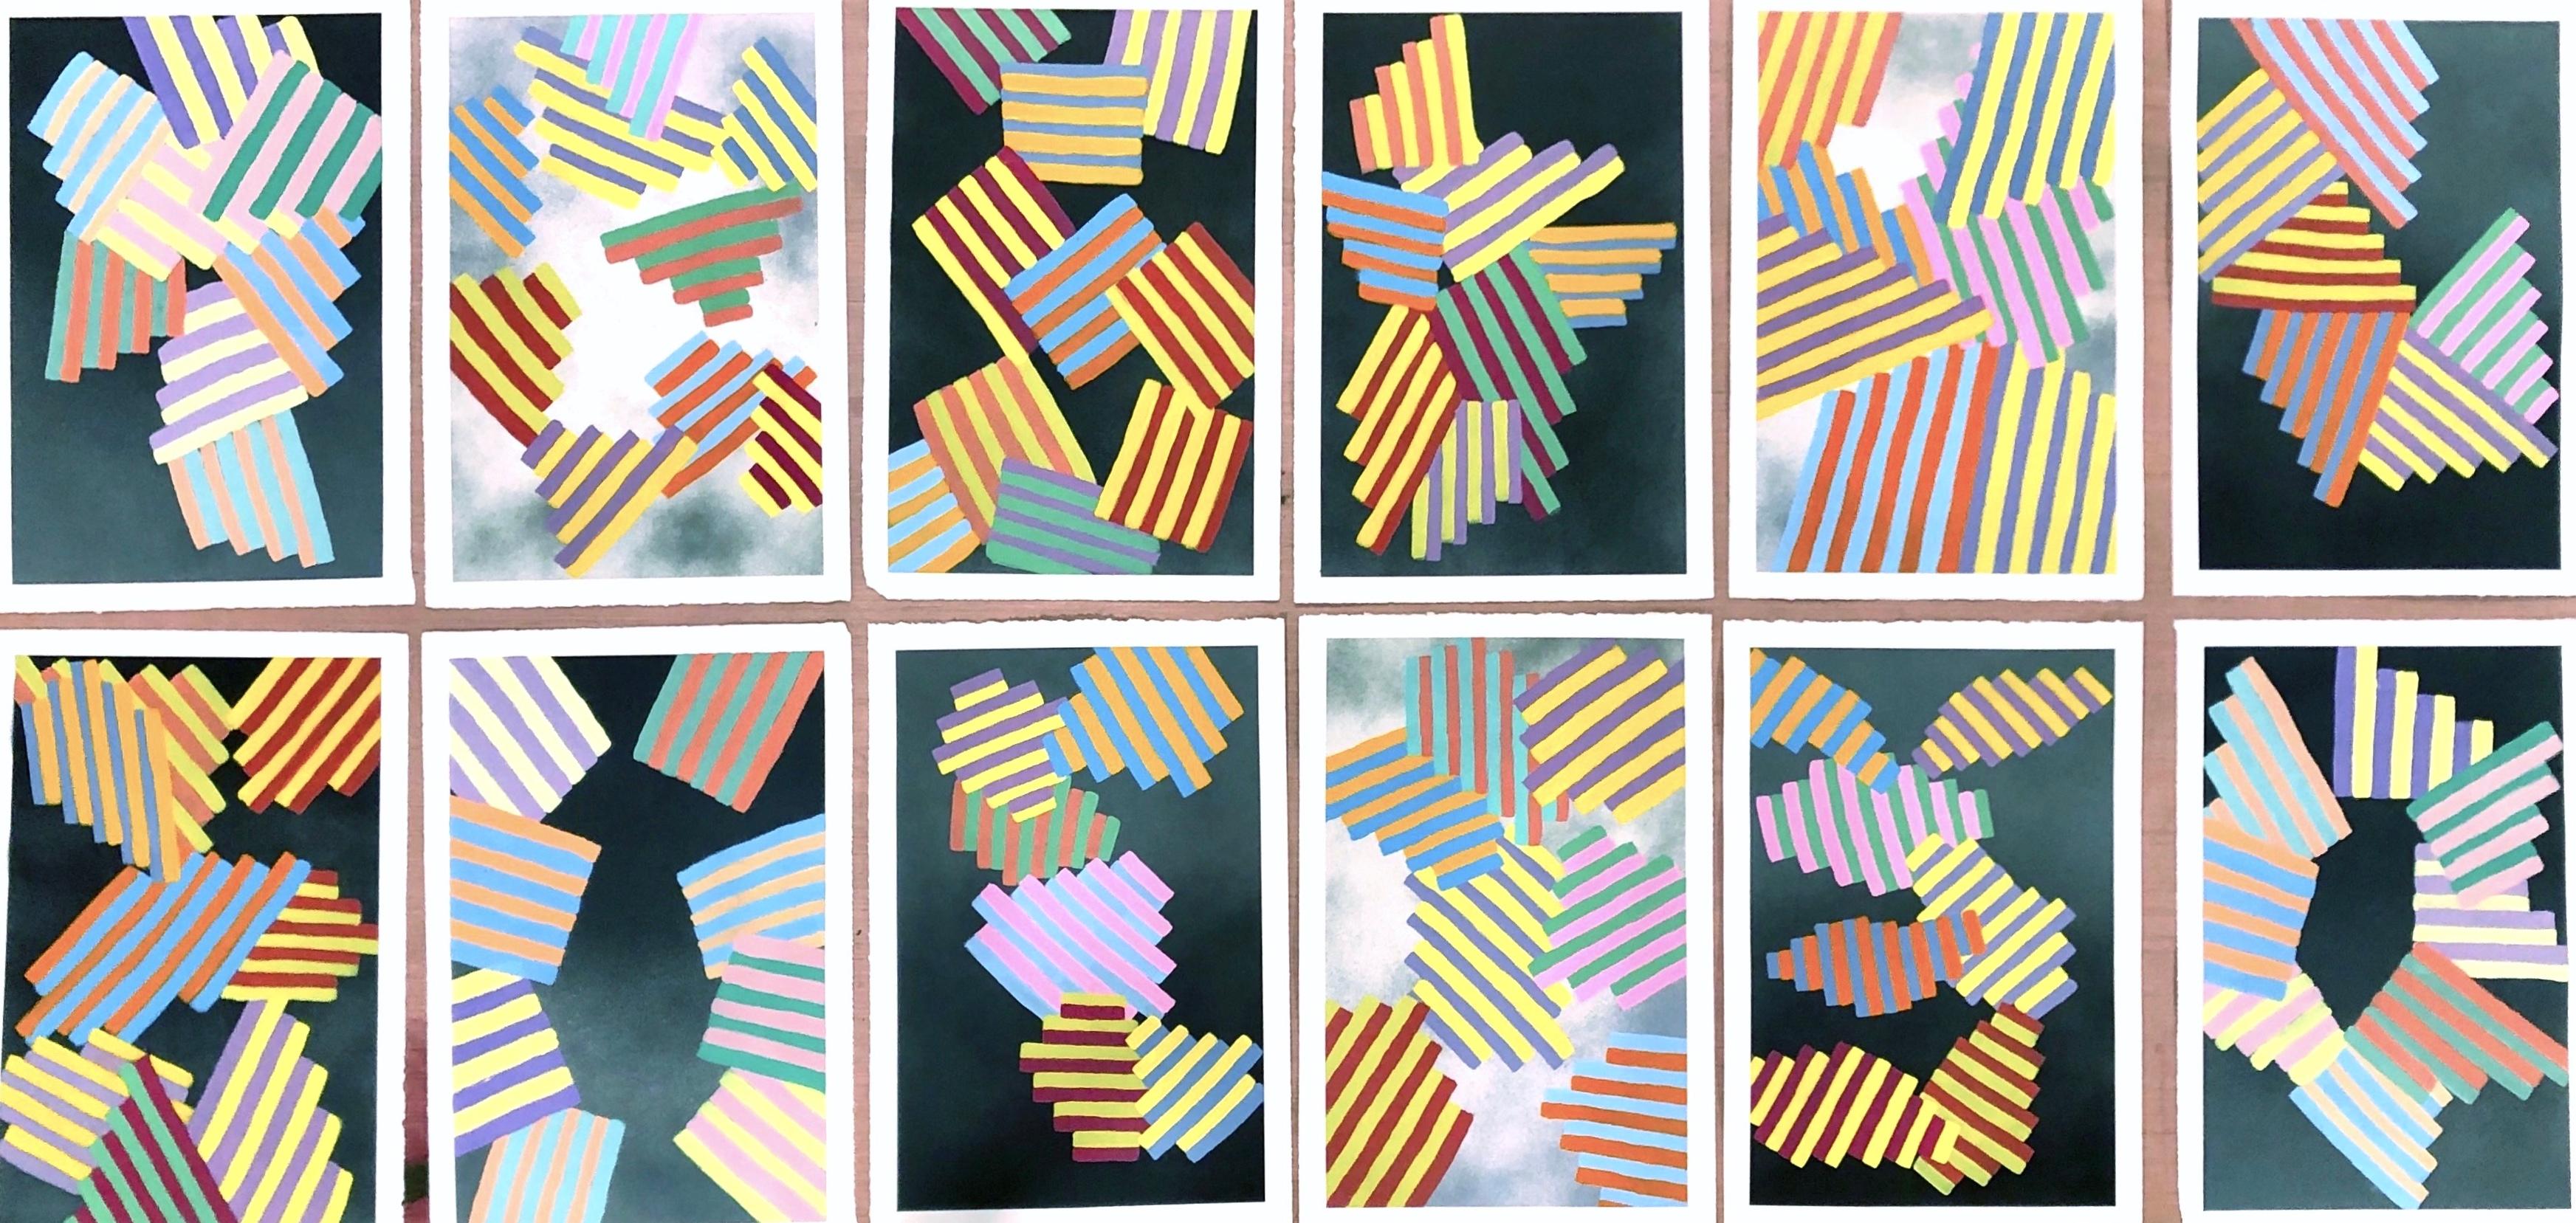 Intérieur Space n°12 : peinture géométrique abstraite sur papier ; bleu, jaune, rouge et noir - Gris Abstract Painting par Jay Walker